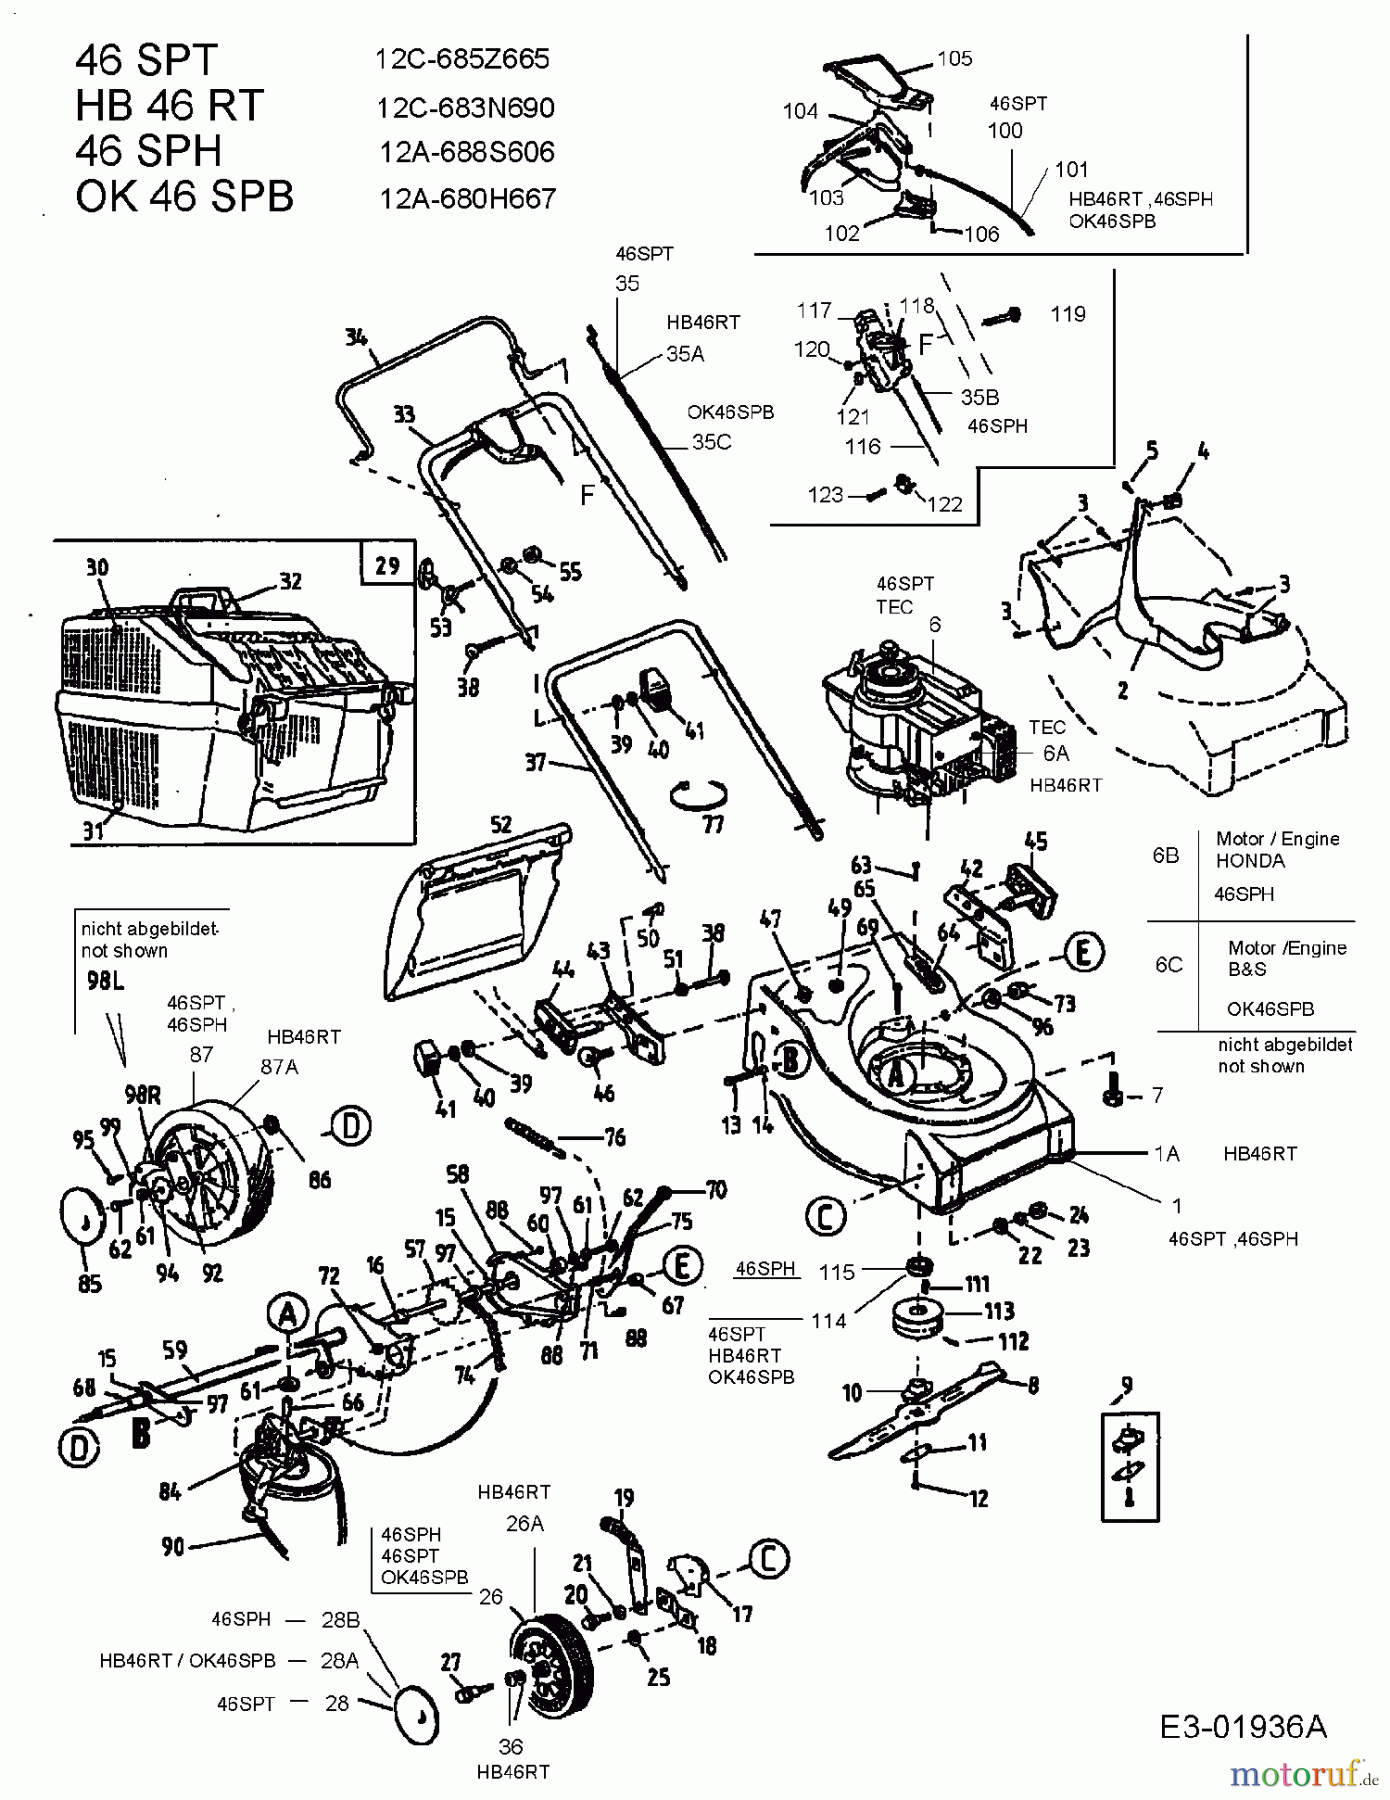  Ok Tondeuse thermique tractée 46 SPB 12A-680H667  (2004) Machine de base